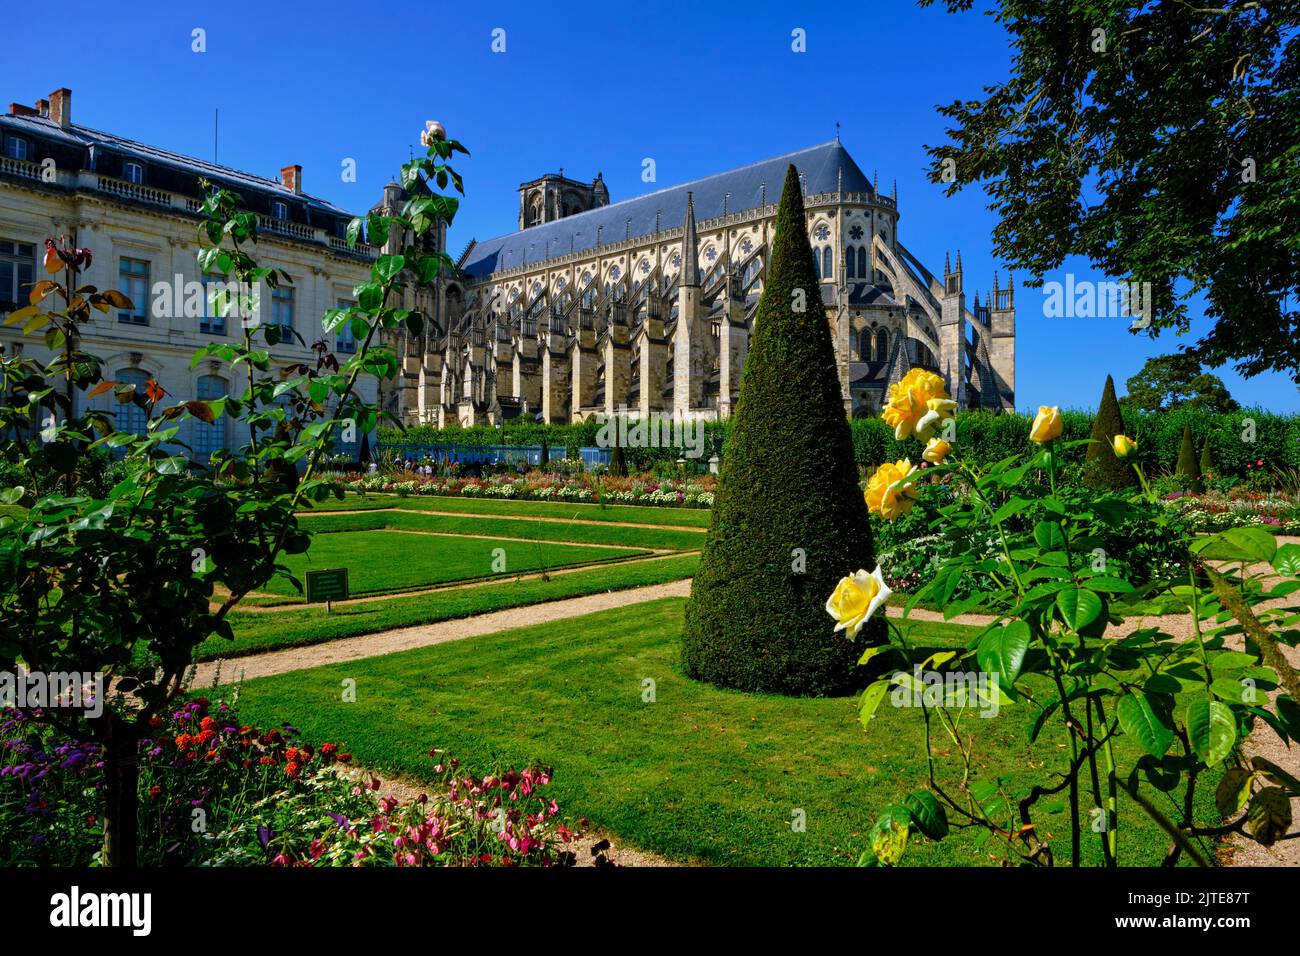 Francia, Cher (18), Bourges, Catedral de St Etienne, Patrimonio de la Humanidad de la UNESCO, el jardín del arzobispo Foto de stock